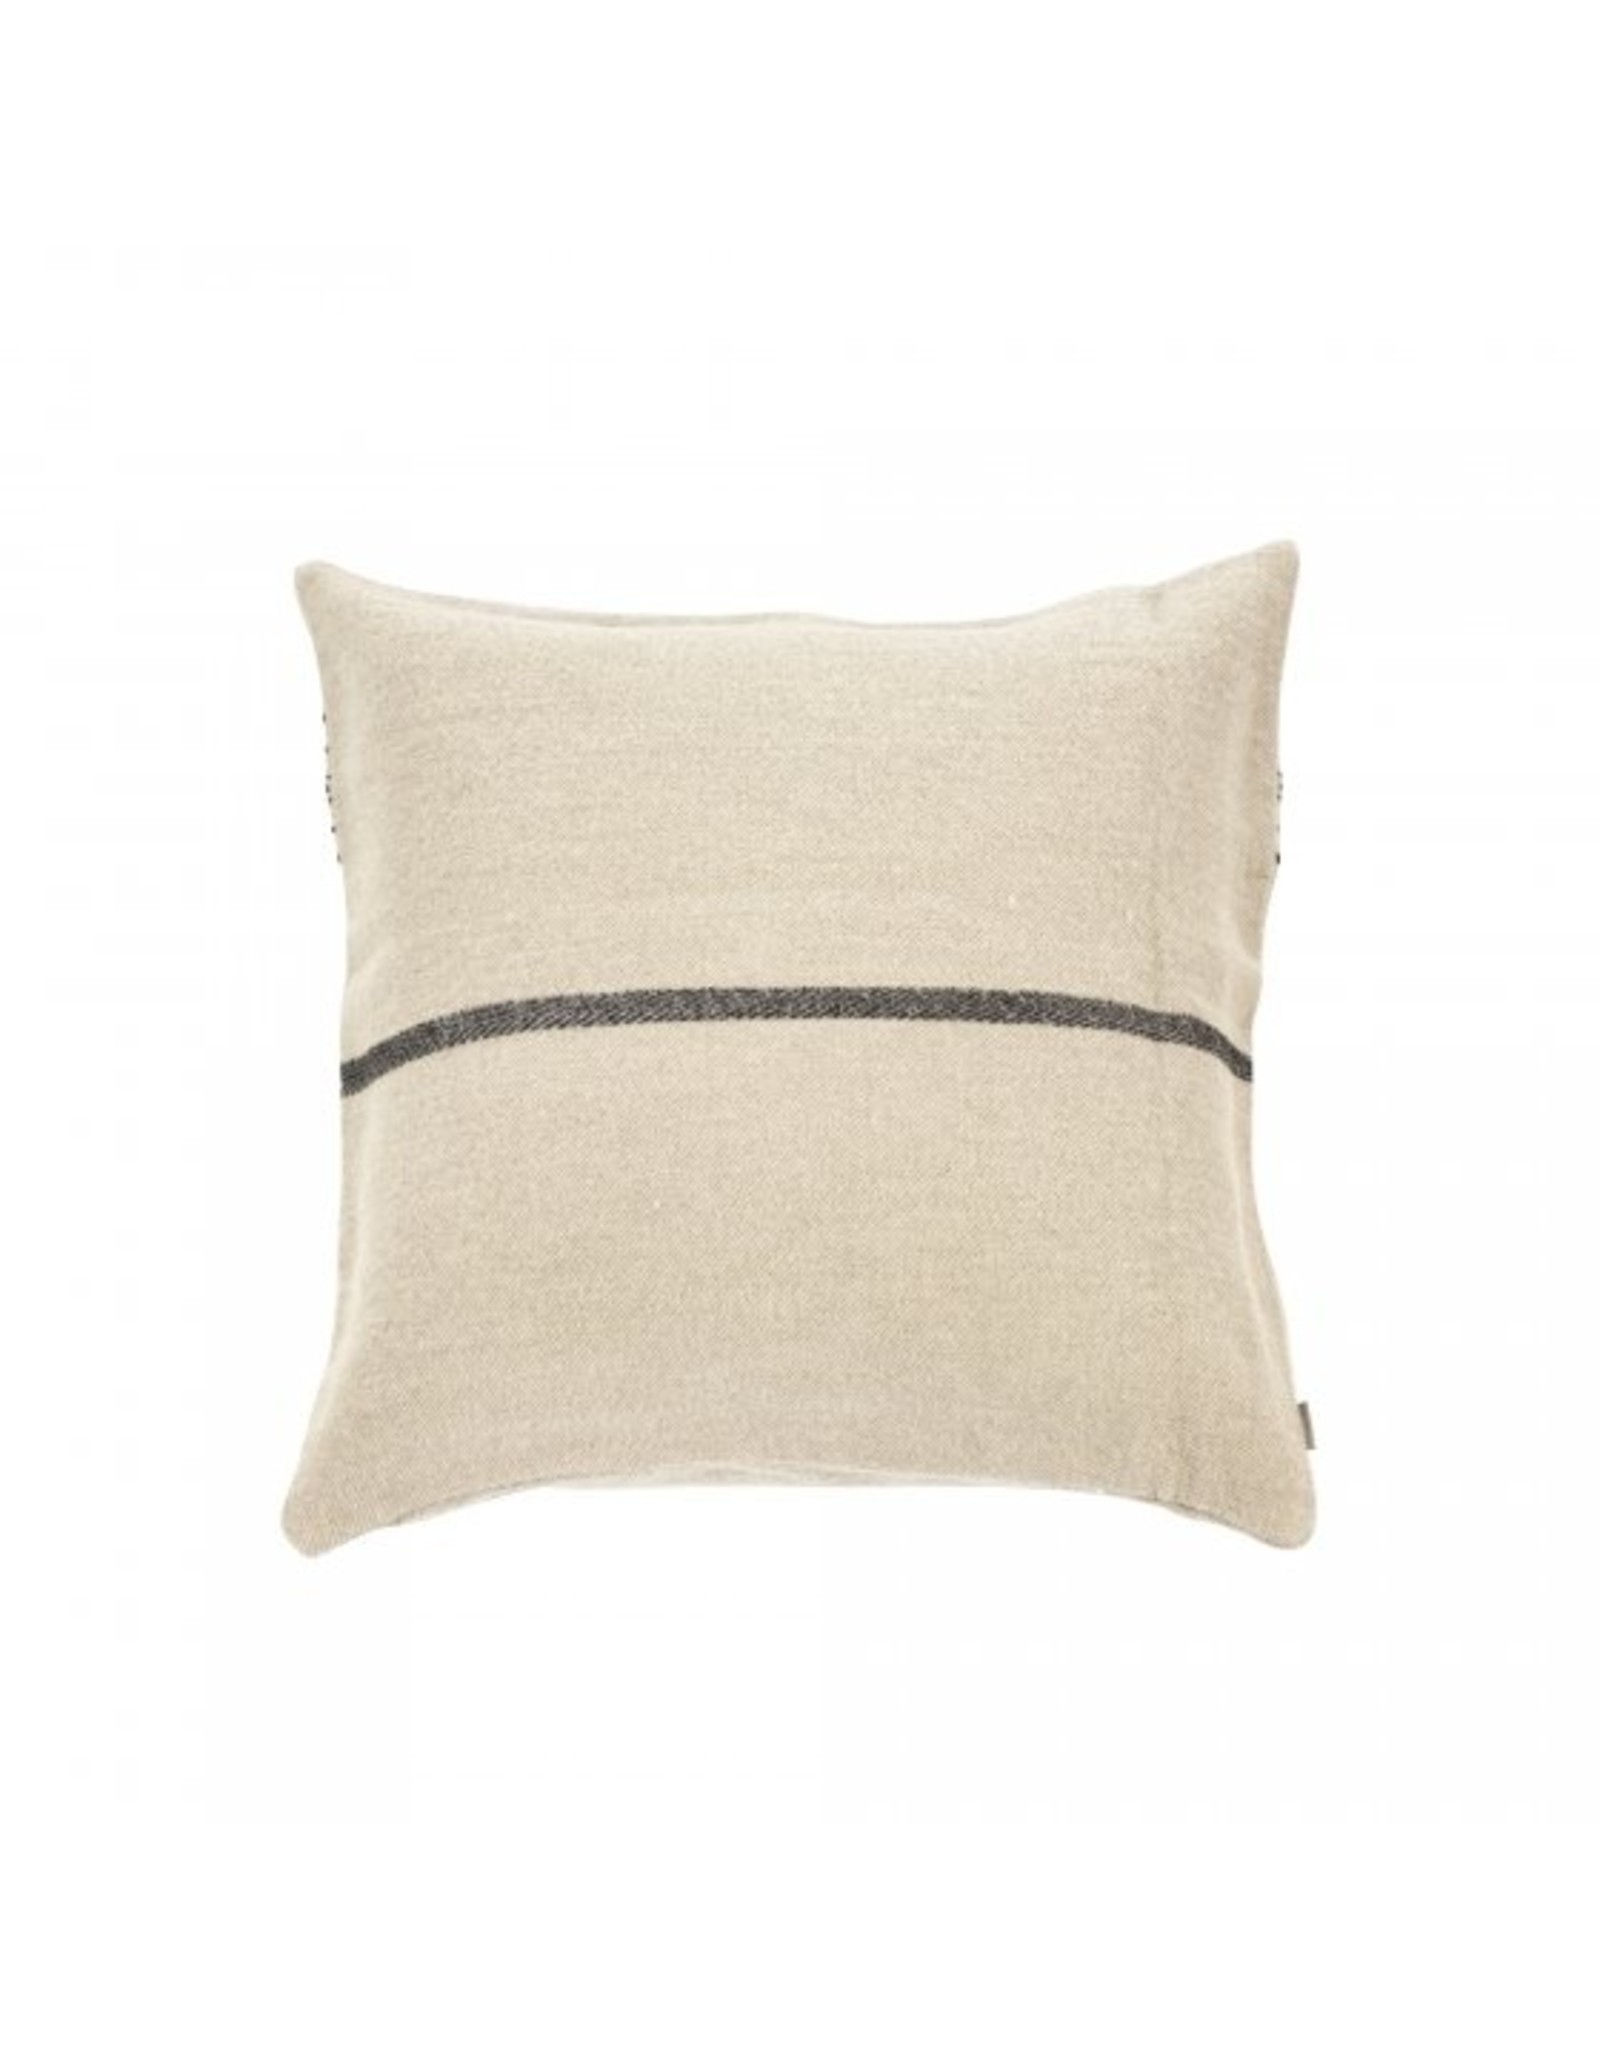 Moroccan Stripe Pillow 20 x 20